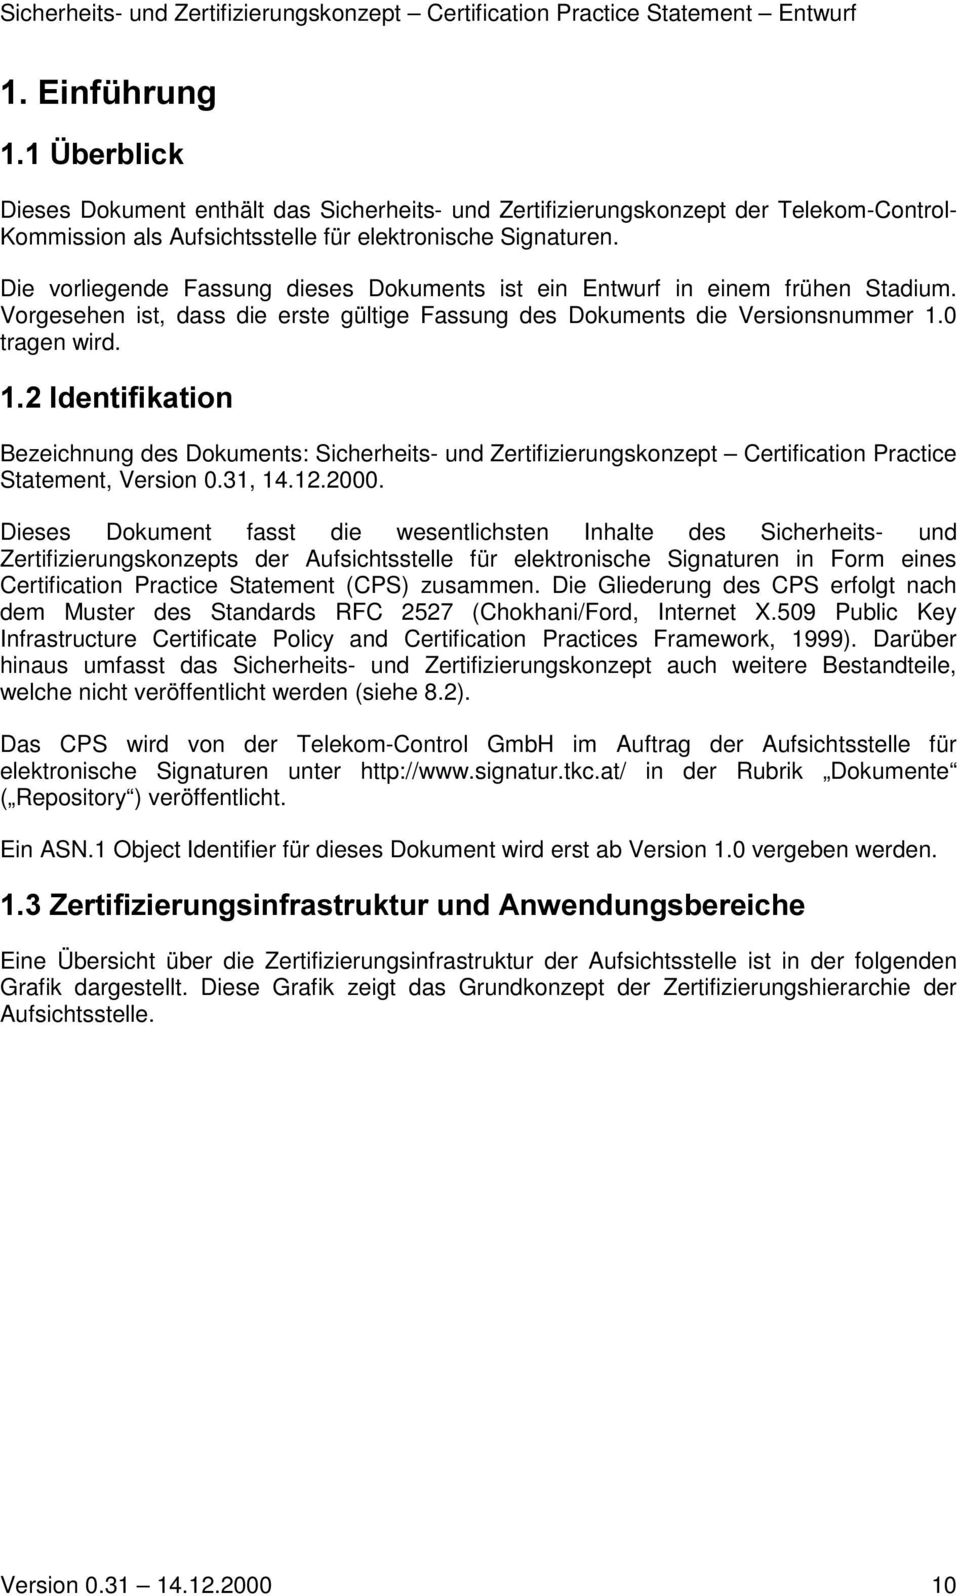 ,ghqwlilndwlrq Bezeichnung des Dokuments: Sicherheits- und Zertifizierungskonzept Certification Practice Statement, Version 0.31, 14.12.2000.